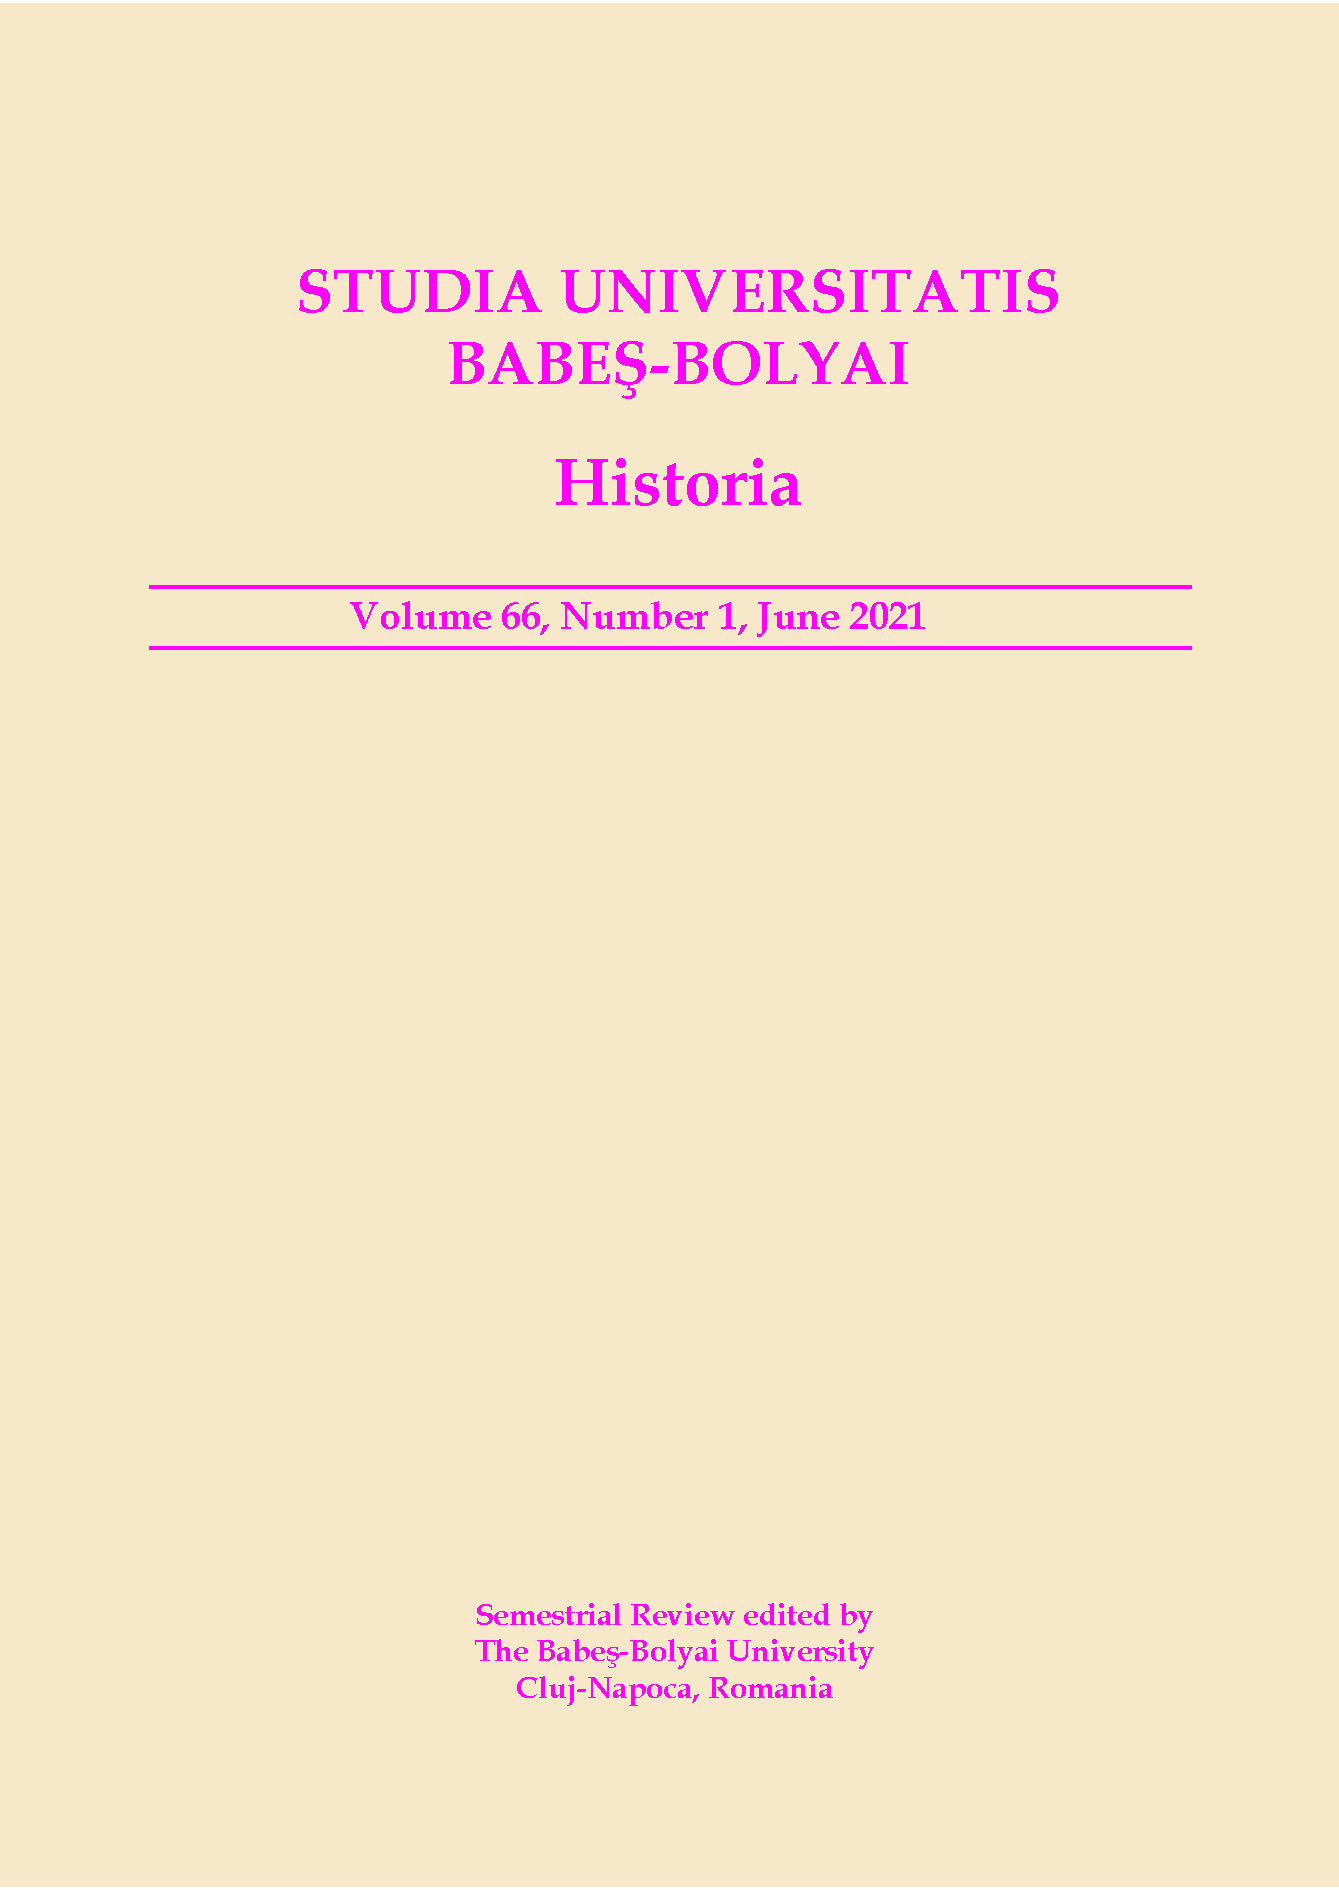 STUDIA UBB HISTORIA, Volume 66 (LXVI), No. 1, June 2021